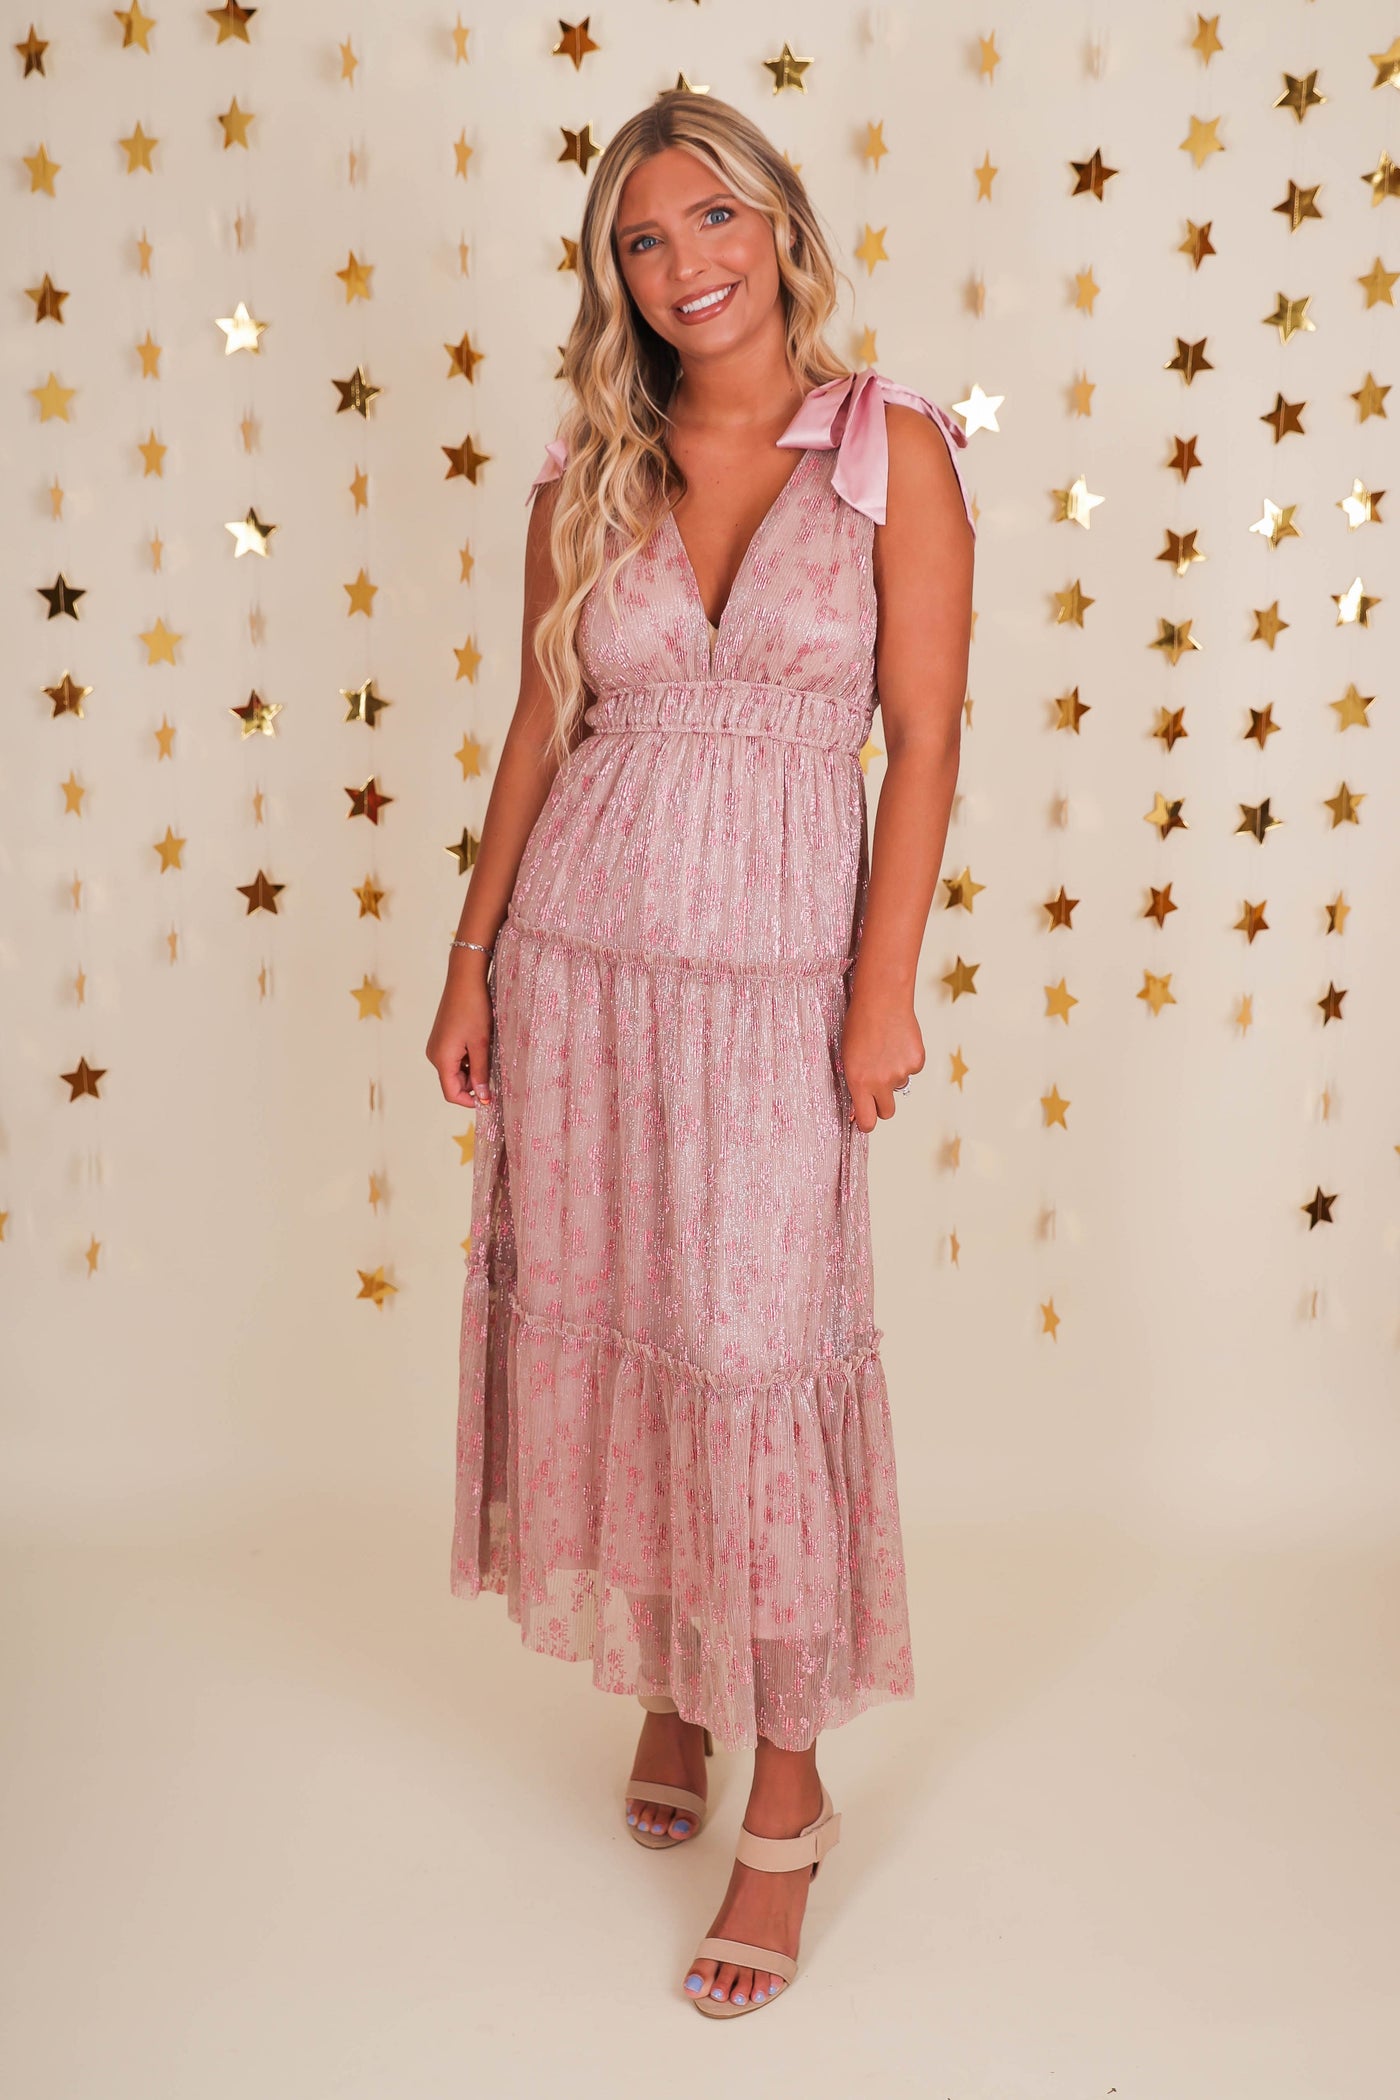 Women's Pink Foil Maxi Dress- Women's Cocktail Dress- Storia Pink Dress